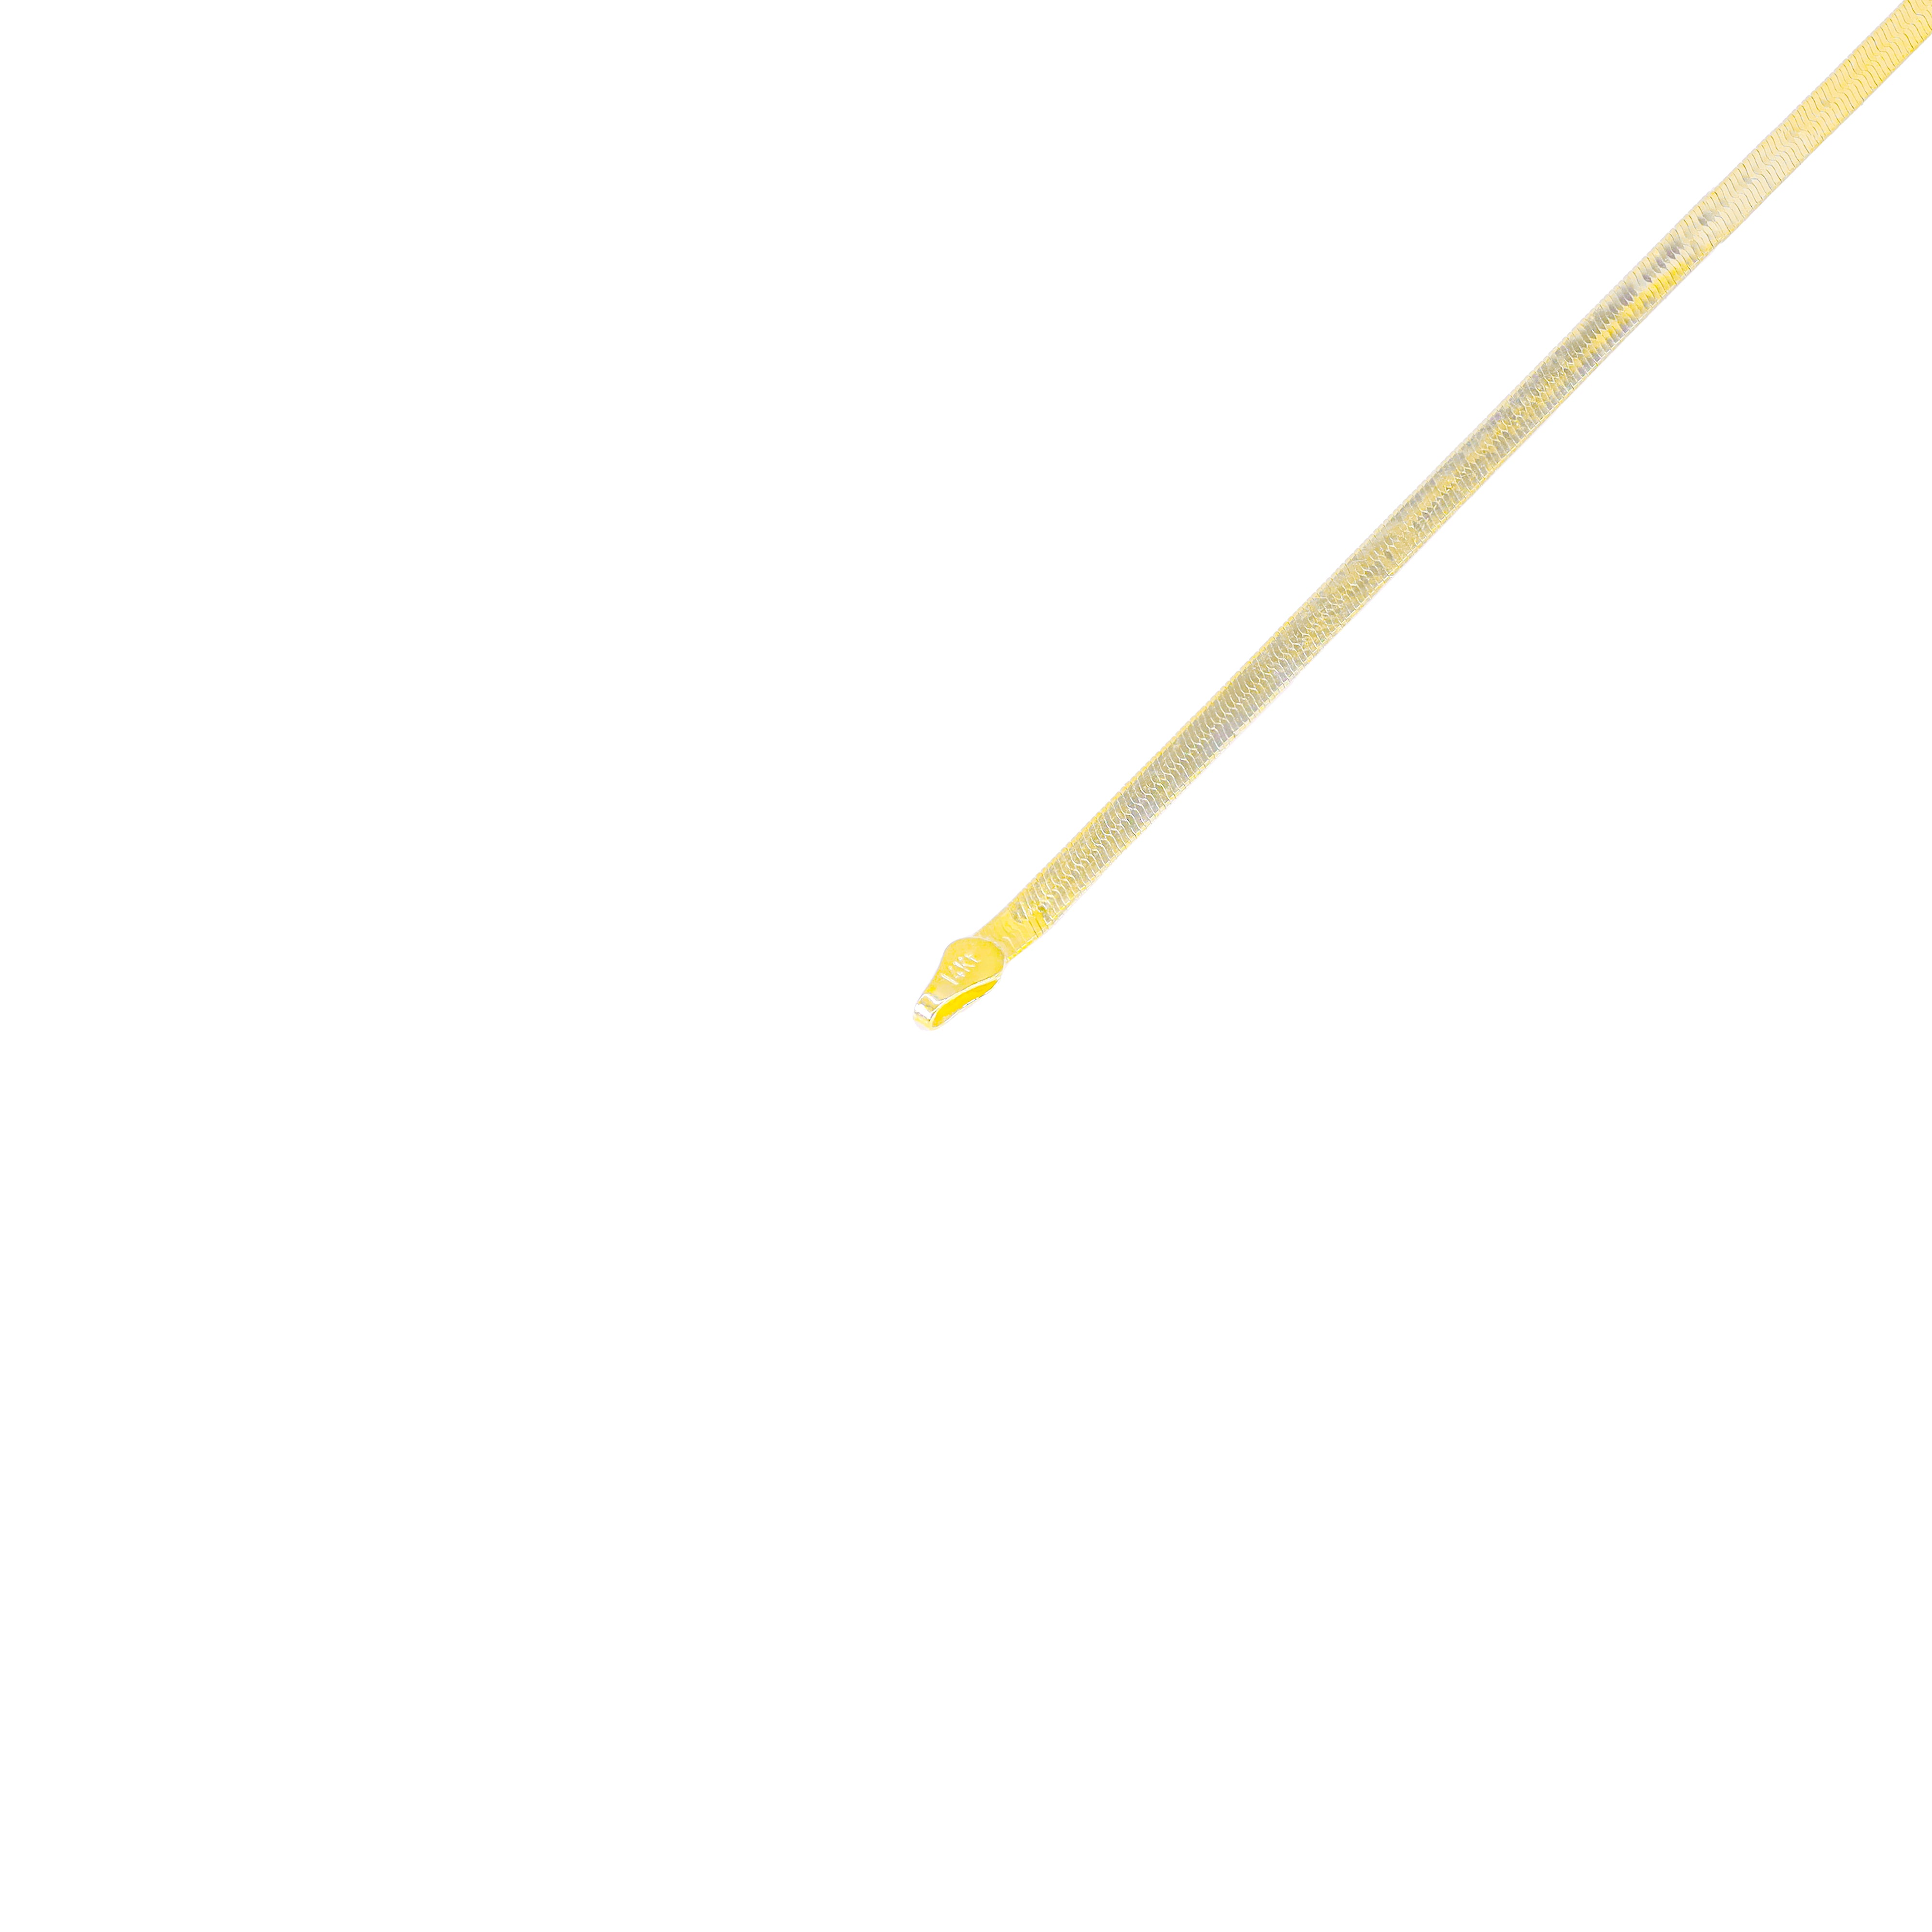 14KT Yellow Gold Herringbone Style Chain